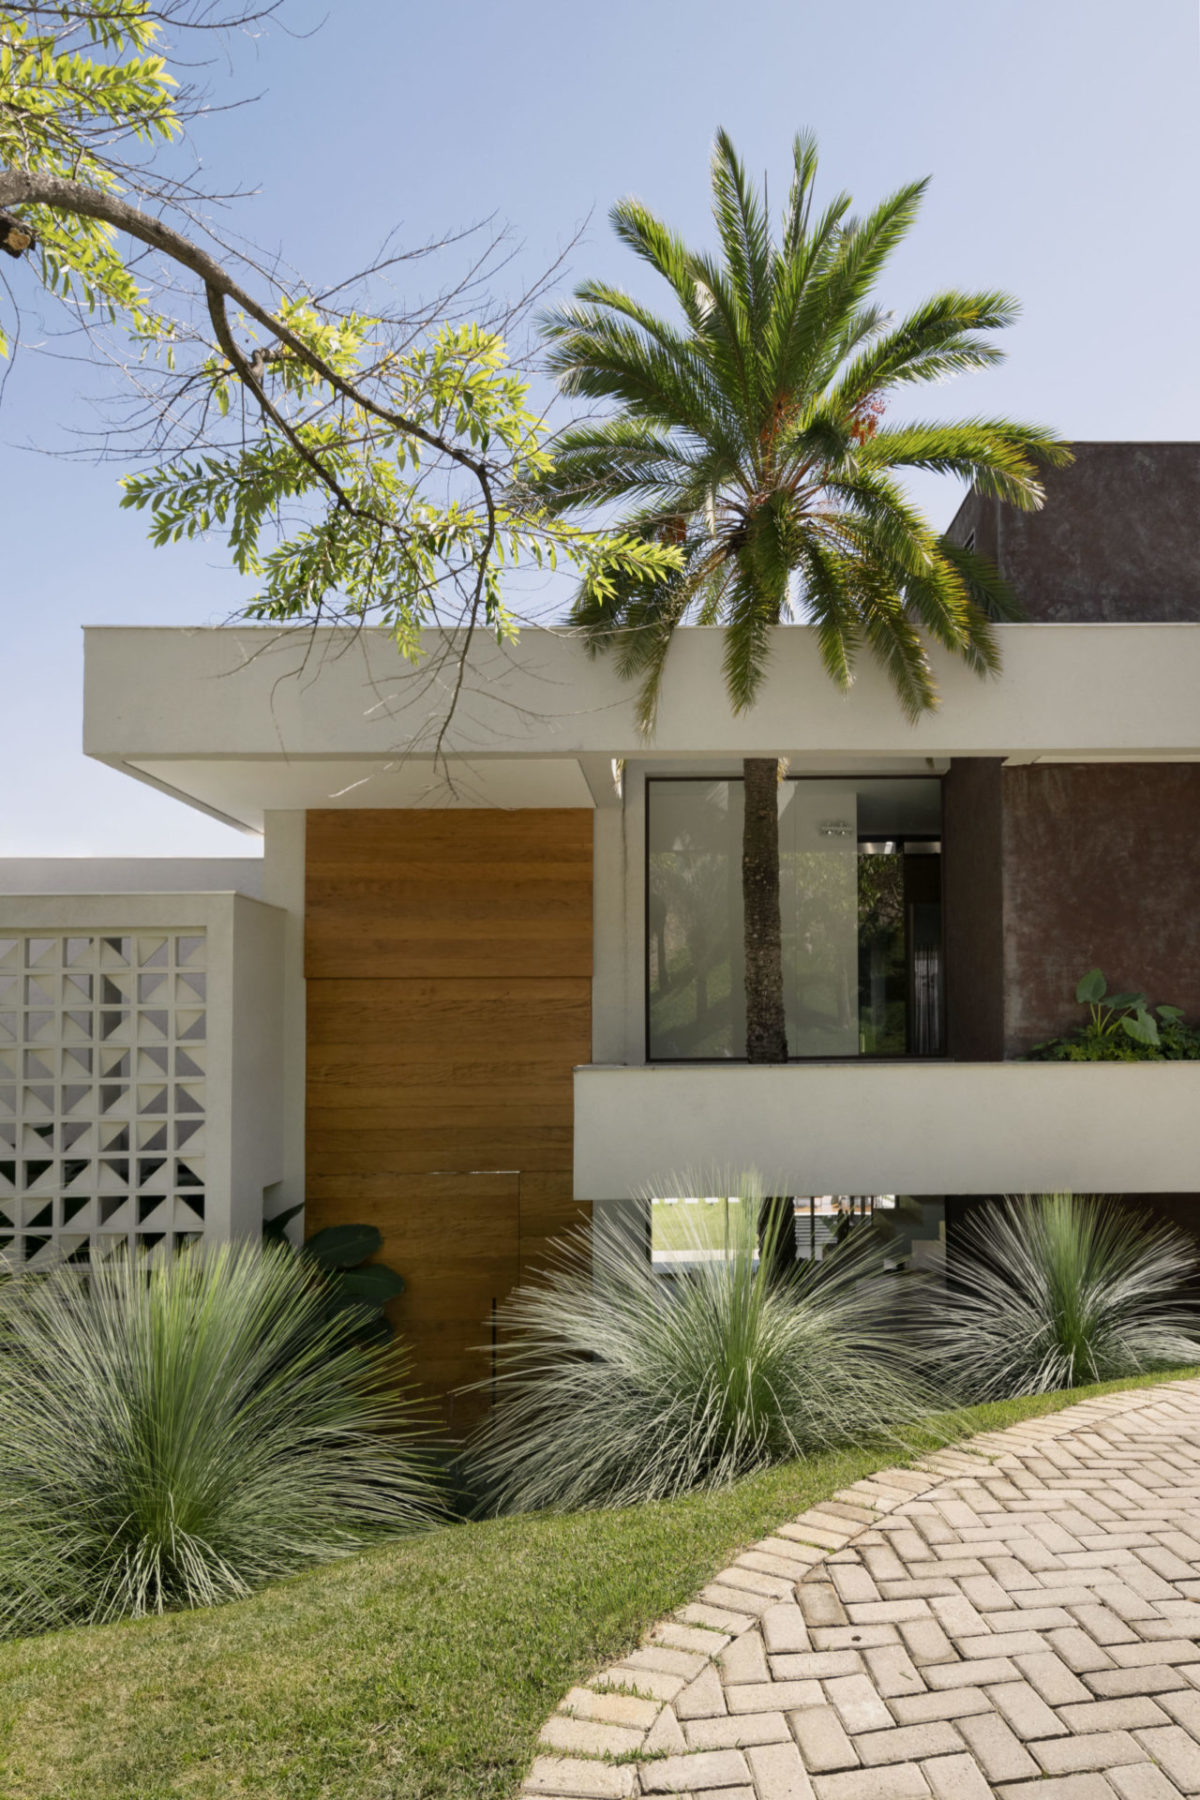 Jardim tropical e integrado à arquitetura em uma casa mineira, com o paisagismo desenvolvido em paralelo à construção, tirando partido do terreno em declive e abraçando a residência em Nova Lima, Minas Gerais.